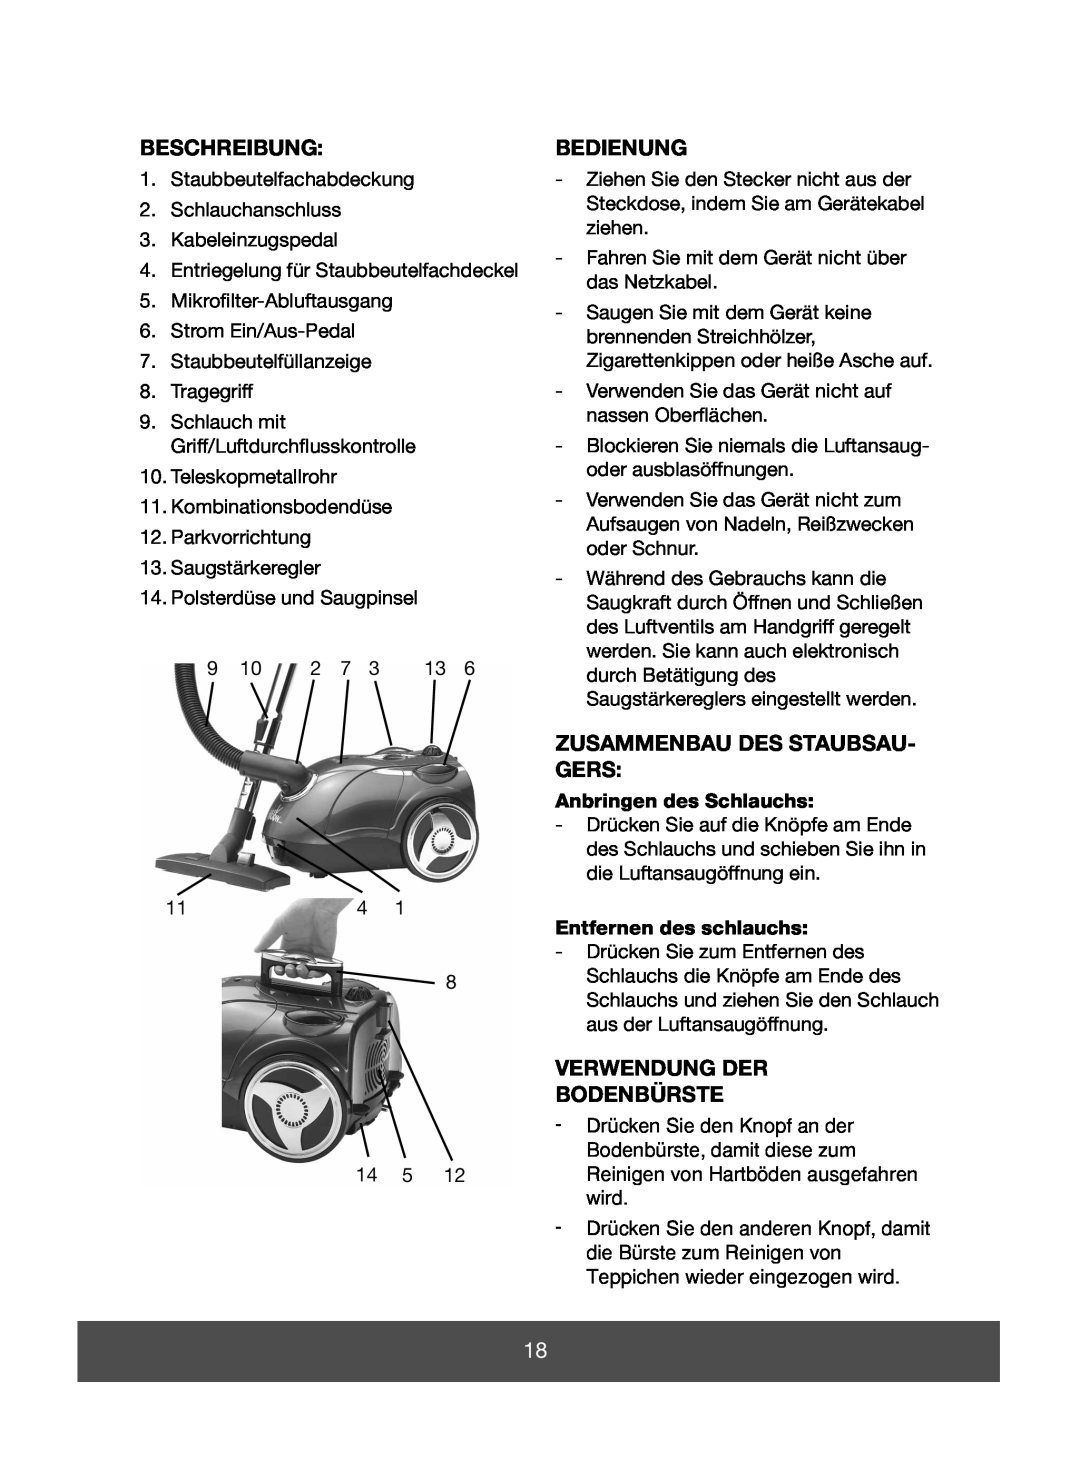 Melissa 640-142 manual Beschreibung, Bedienung, Zusammenbau Des Staubsau- Gers, Verwendung Der Bodenbürste 